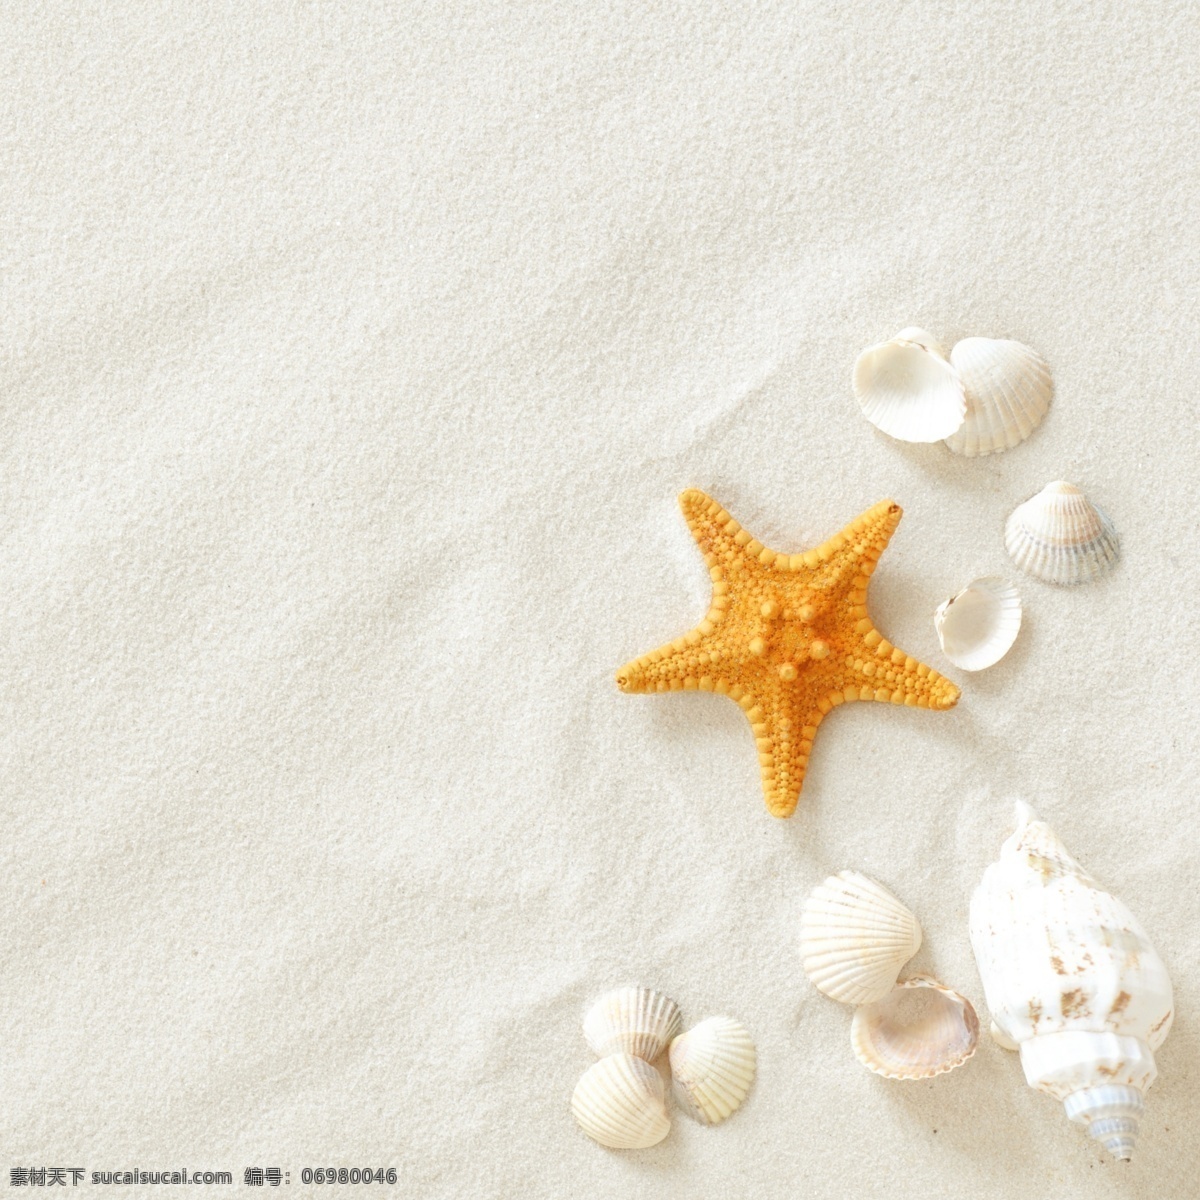 贝壳 海边 海螺 海滩 海洋生物 化石 沙滩 沙滩生物 珍珠贝壳 夏日 夏季 夏天 自然风景 自然景观 psd源文件